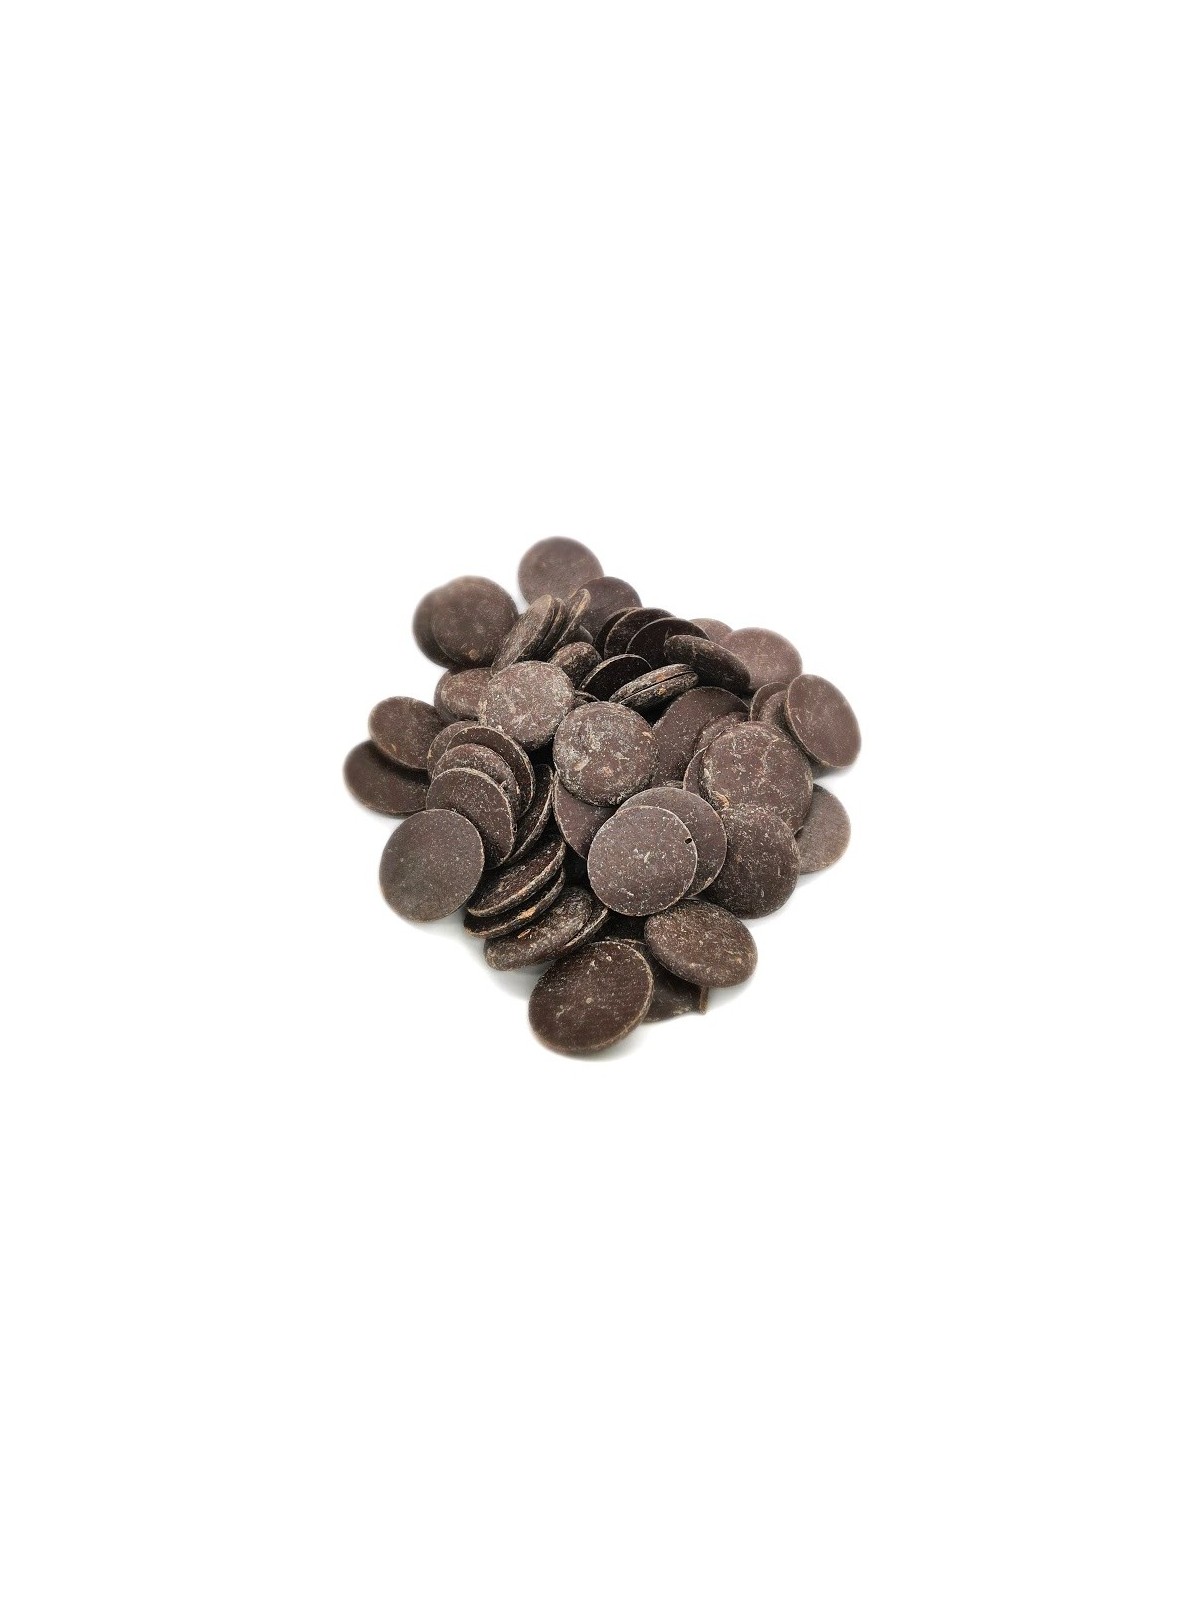 Hořká čokoláda 70% pecky - dark discs - 500g